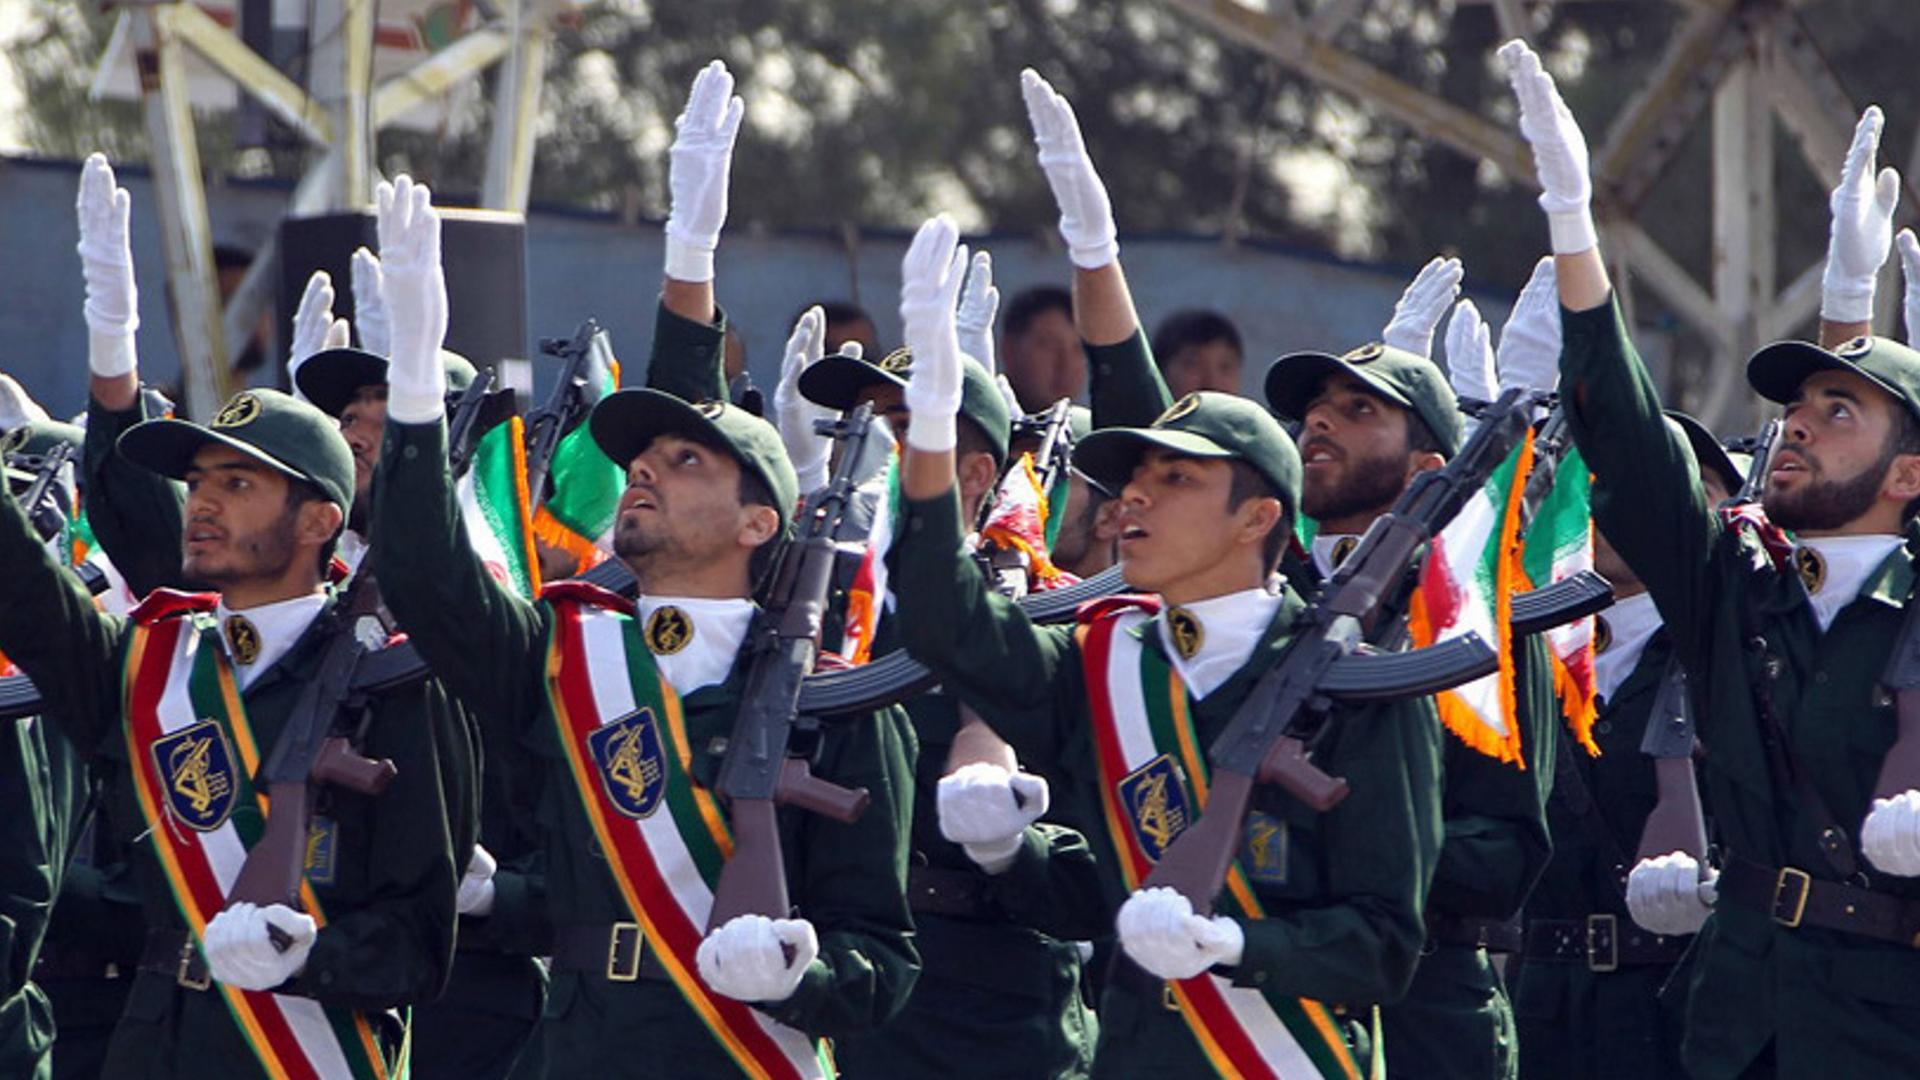 Das Bild zegt eine Militärparade der Iranischen Revolutionsgarden